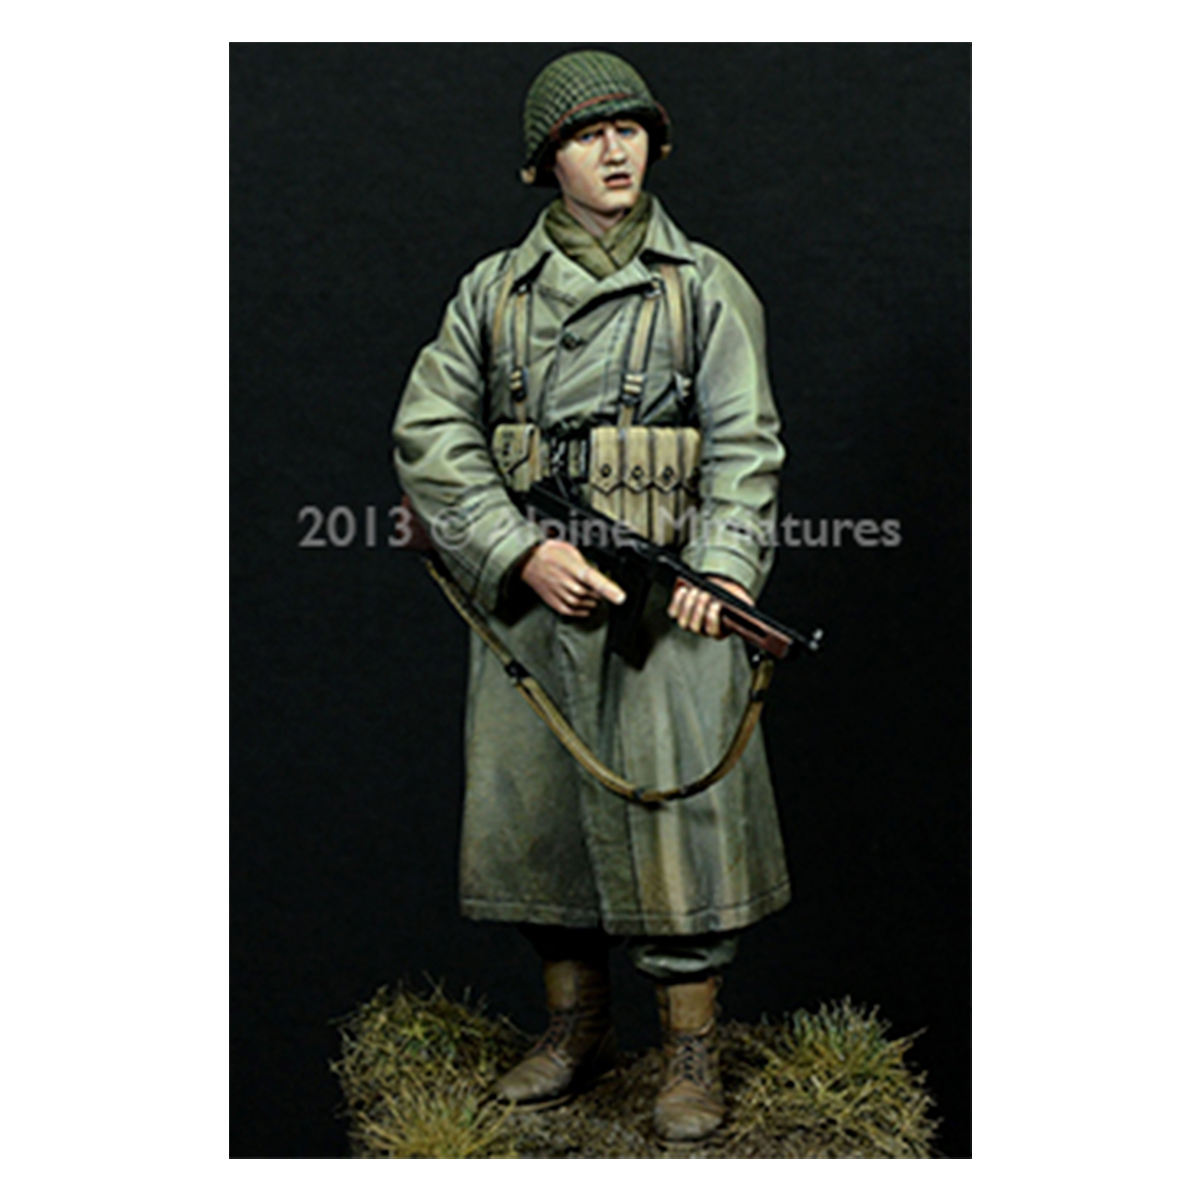 Alpine Miniatures – WW2 US Infantry NCO (1/16)